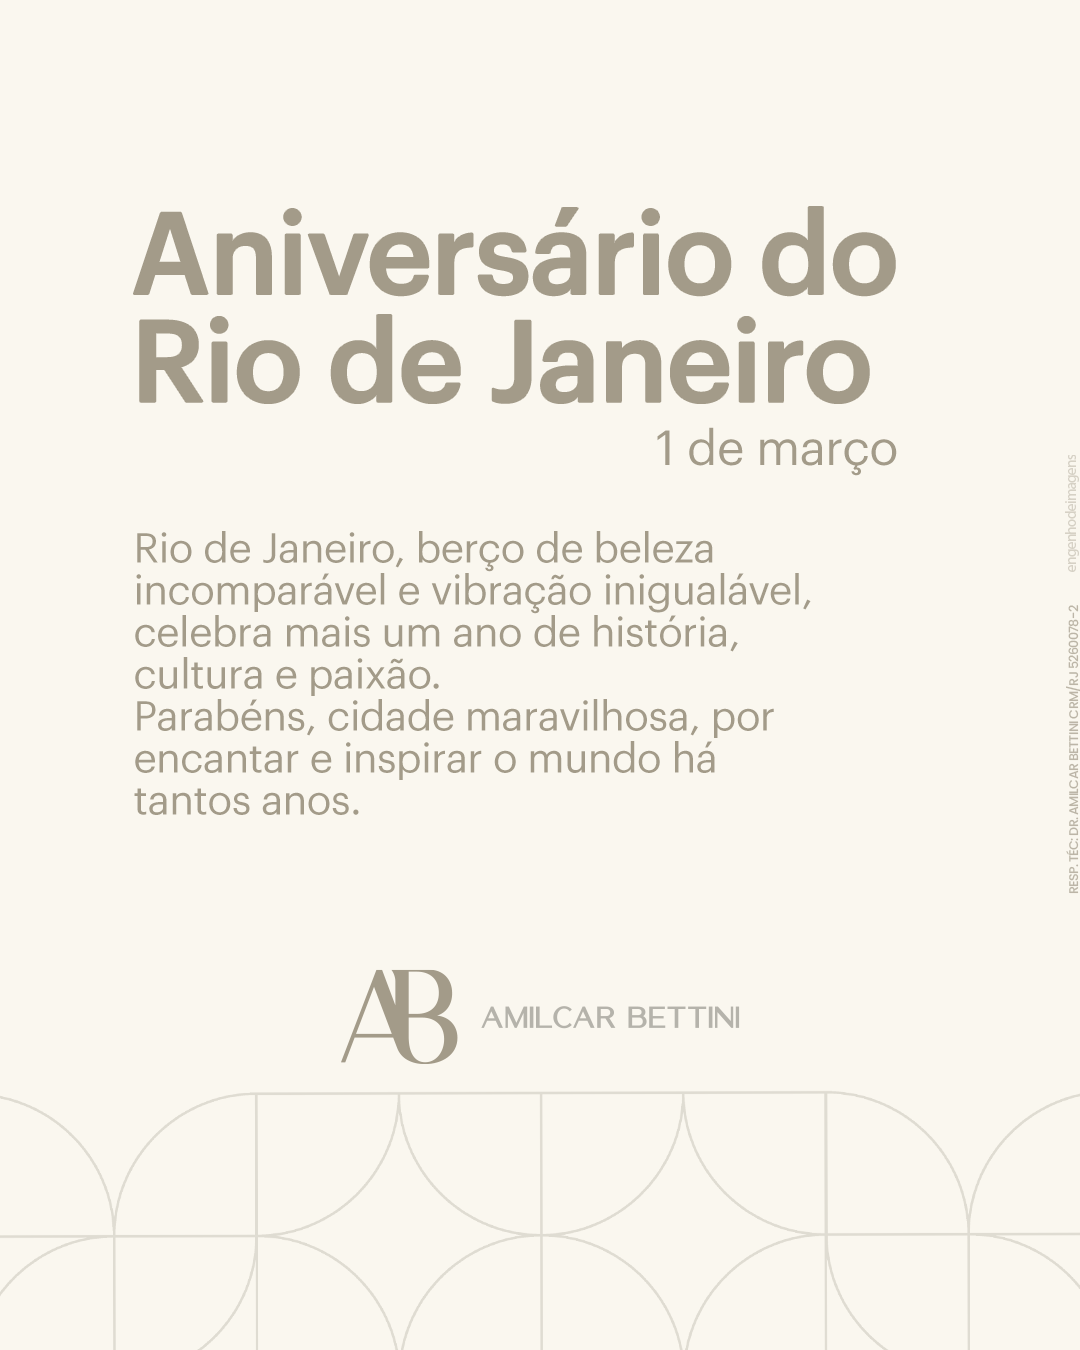 Data especial no RIO DE JANEIRO.